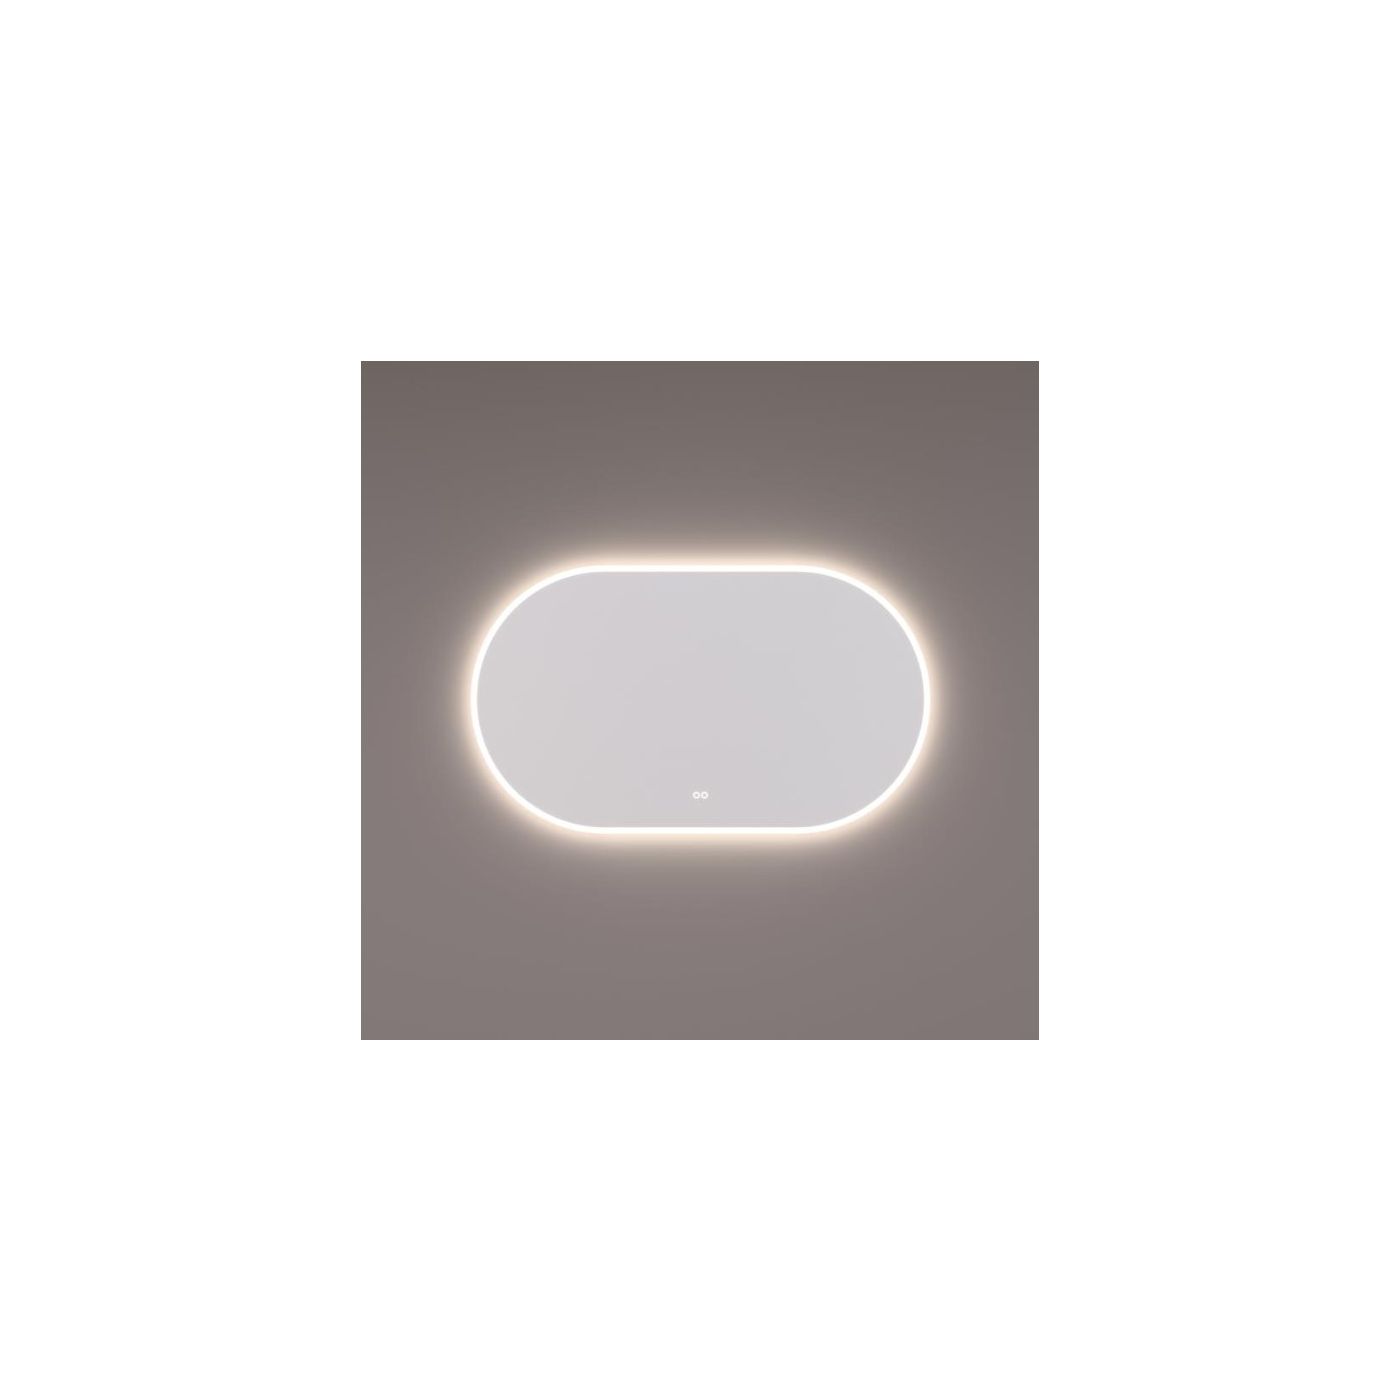 Hipp-Design spiegel ovaal-recht met LED verlichting 140x70